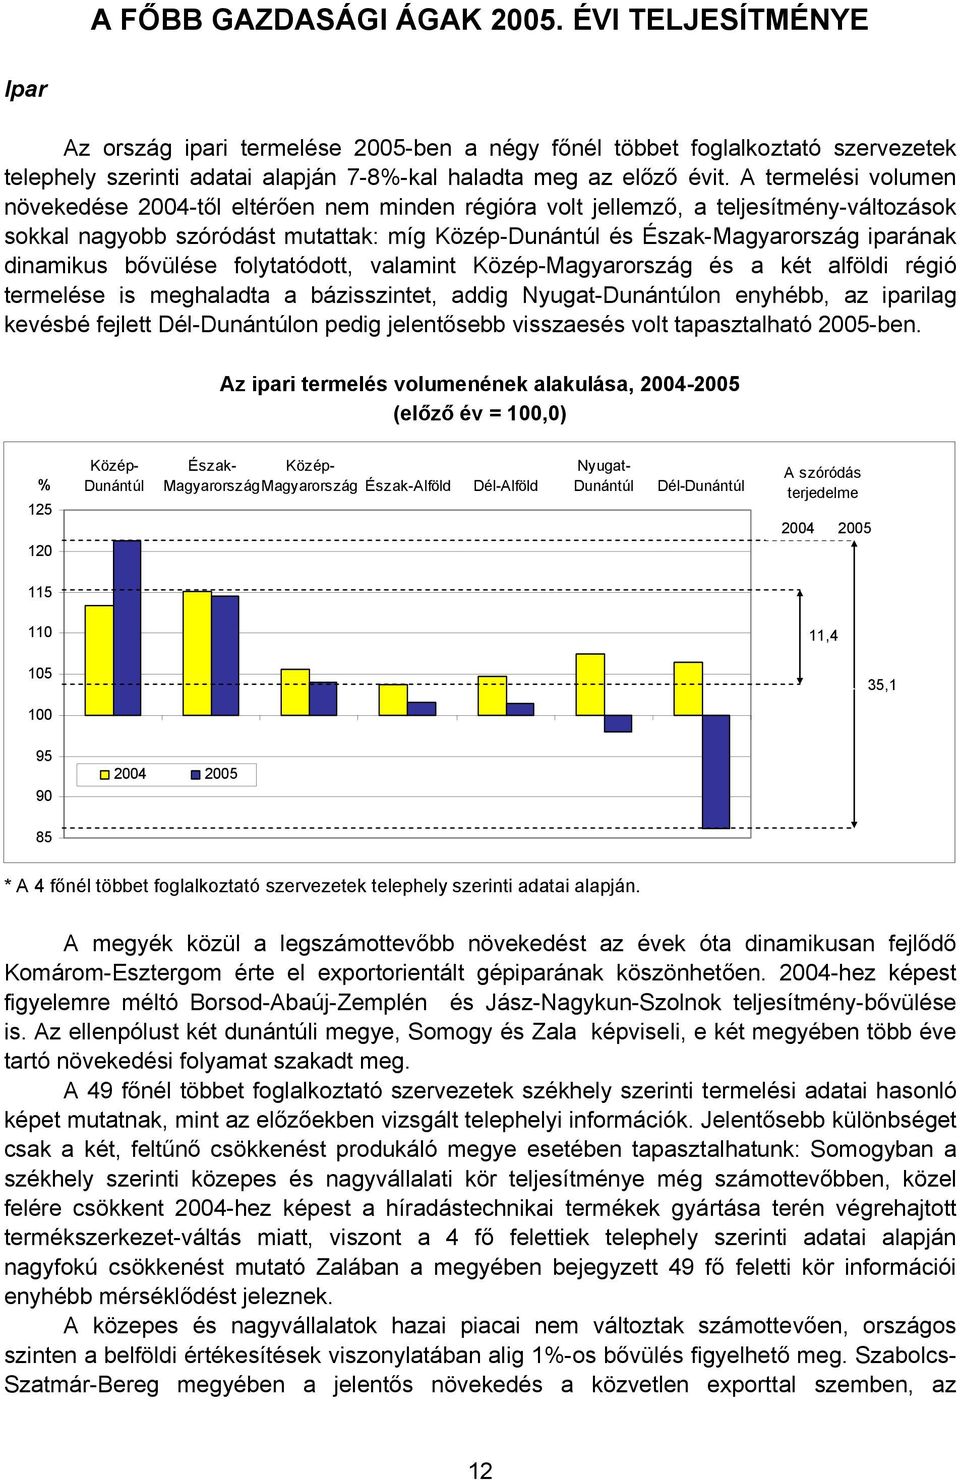 A termelési volumen növekedése 2004-től eltérően nem minden régióra volt jellemző, a teljesítmény-változások sokkal nagyobb szóródást mutattak: míg Közép- és Észak-Magyarország iparának dinamikus